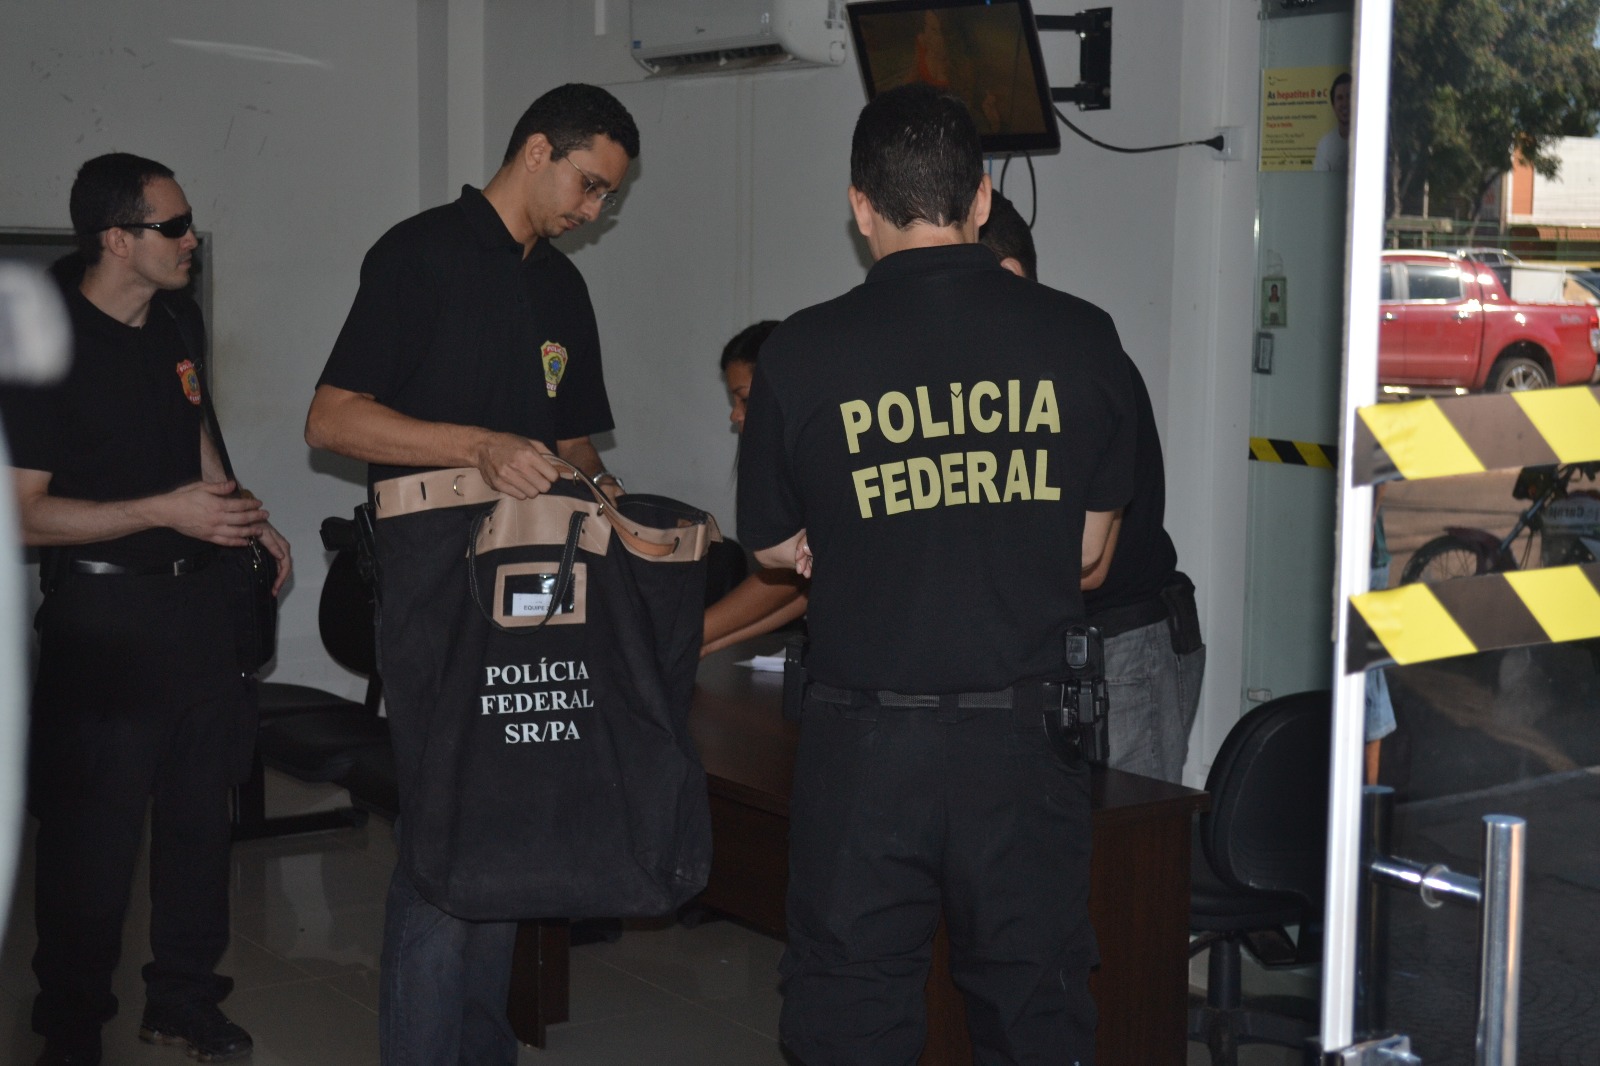  Operação Asfixia: Policia Federal cumpre mandado na Prefeitura de Parauapebas e Marabá